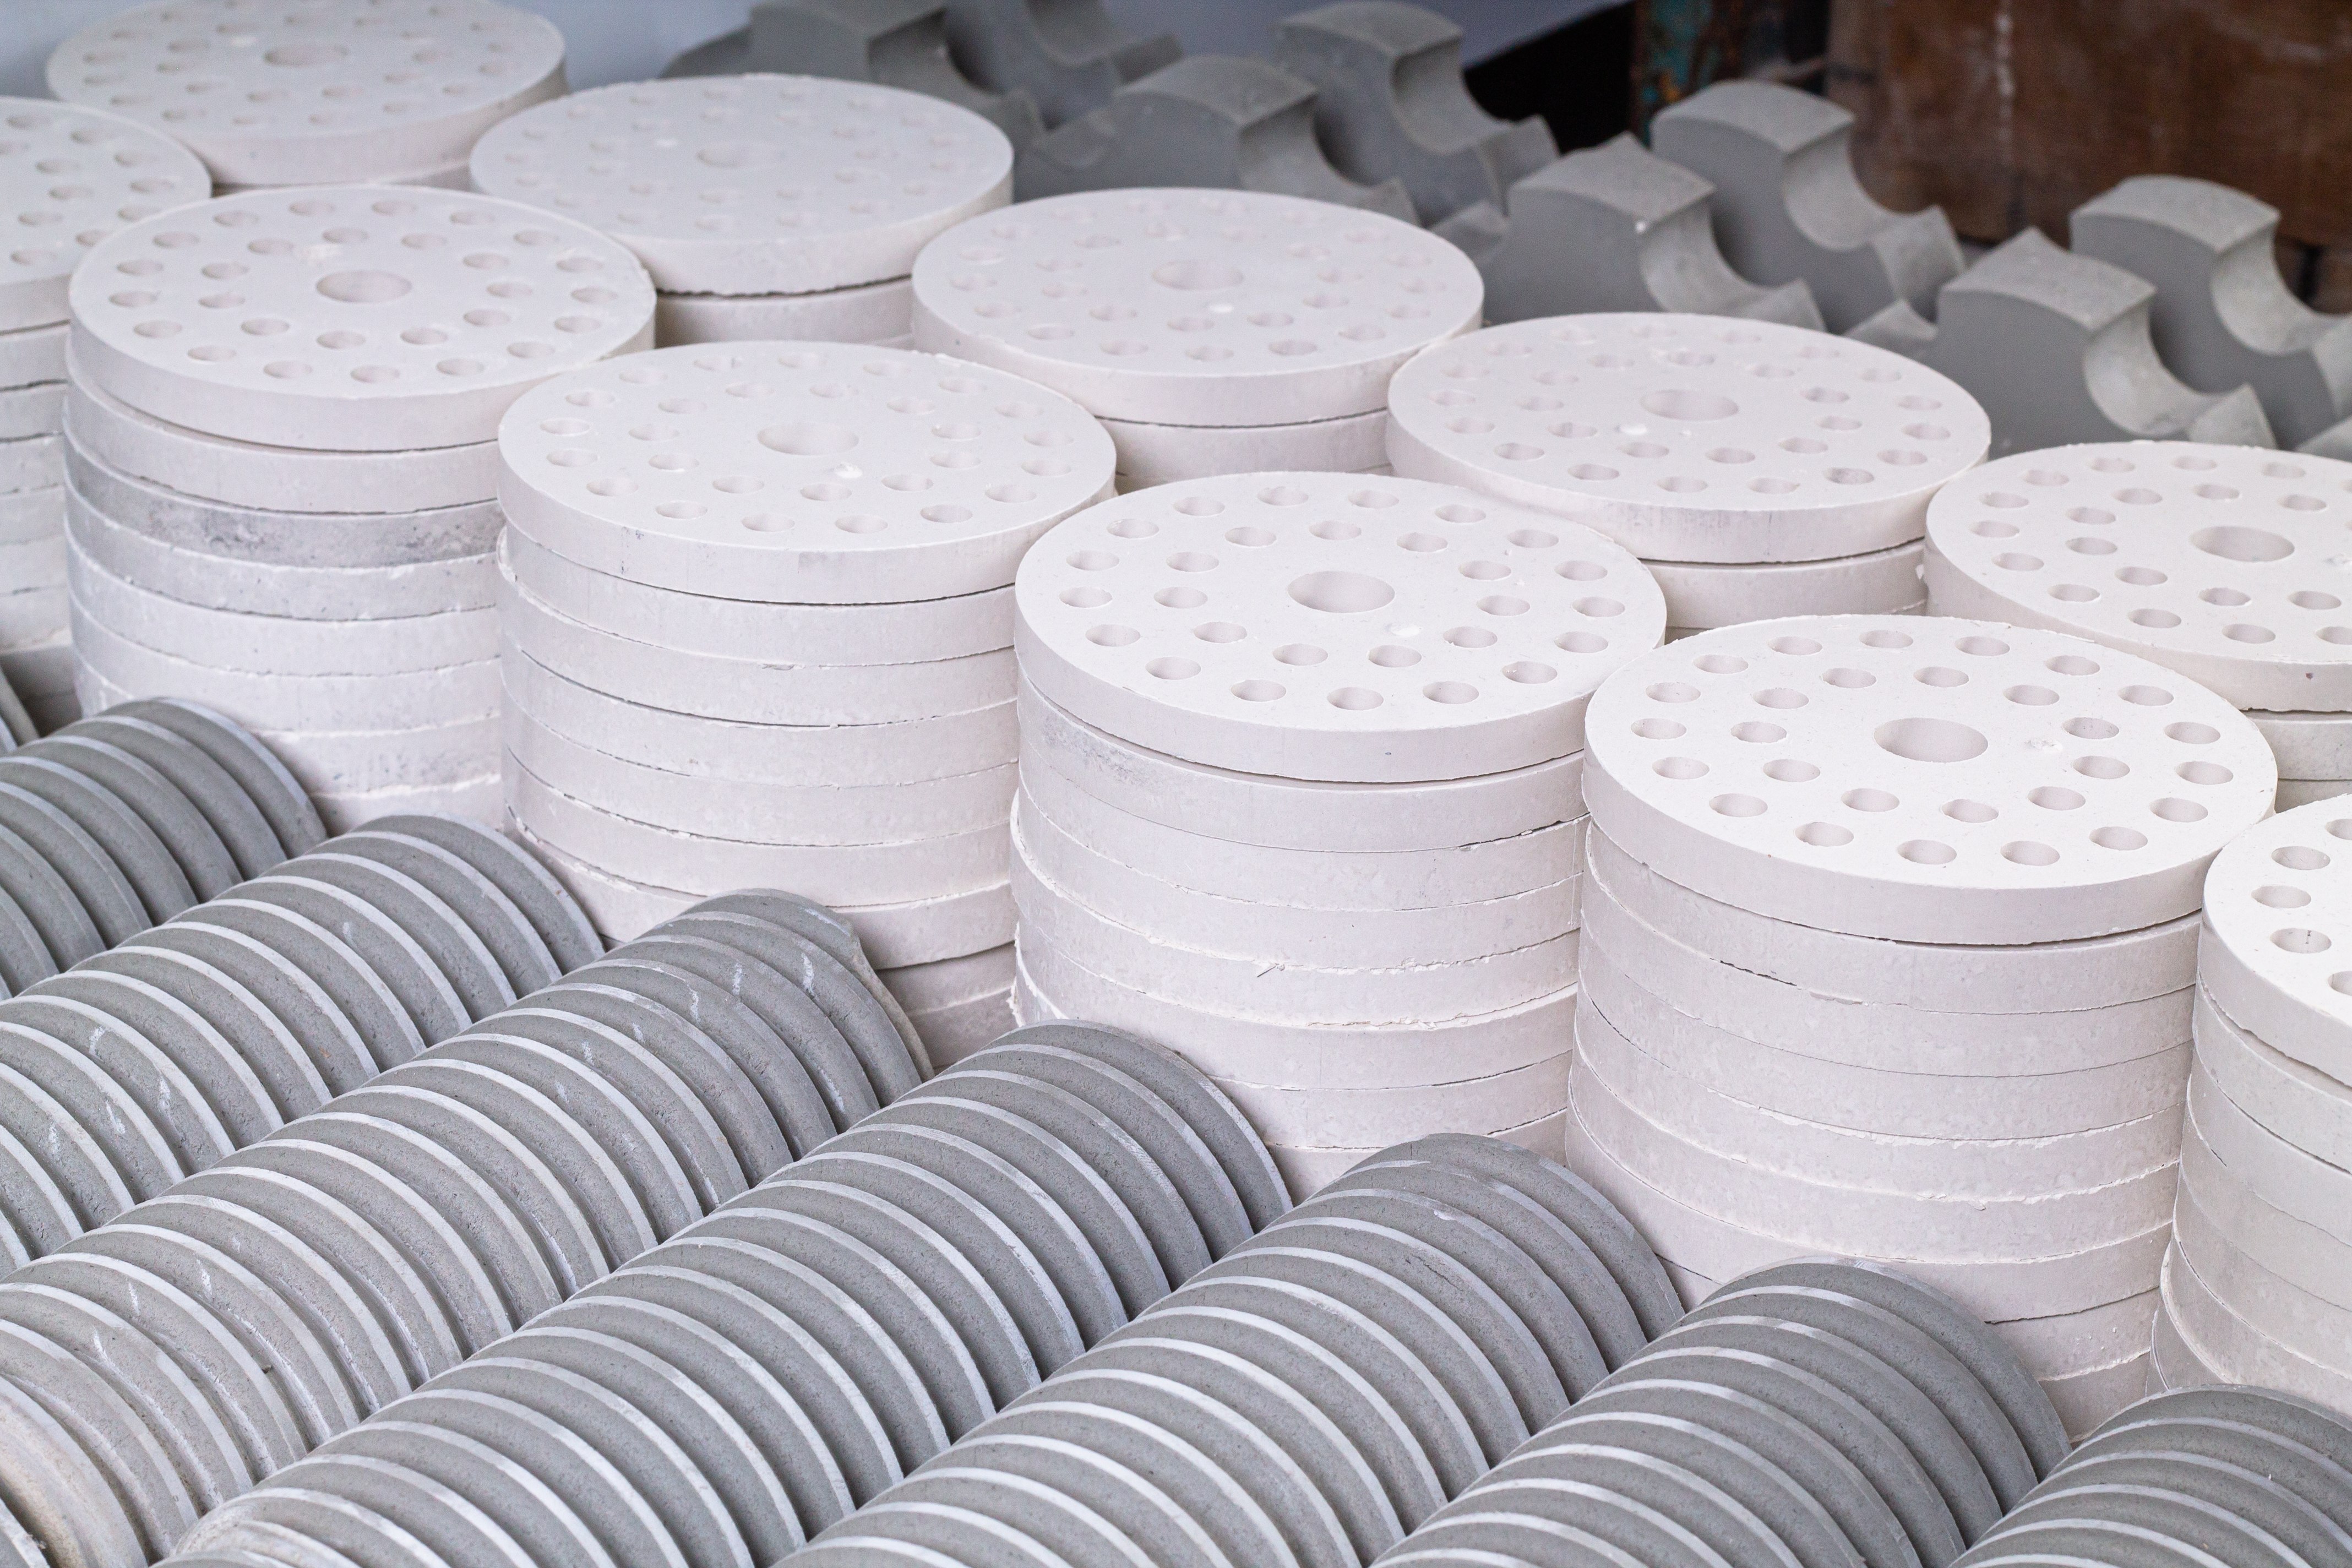 高纯度的氧化物和陶瓷可以用于轻质、高性能半导体的生产，以及高温热绝缘和电绝缘应用。